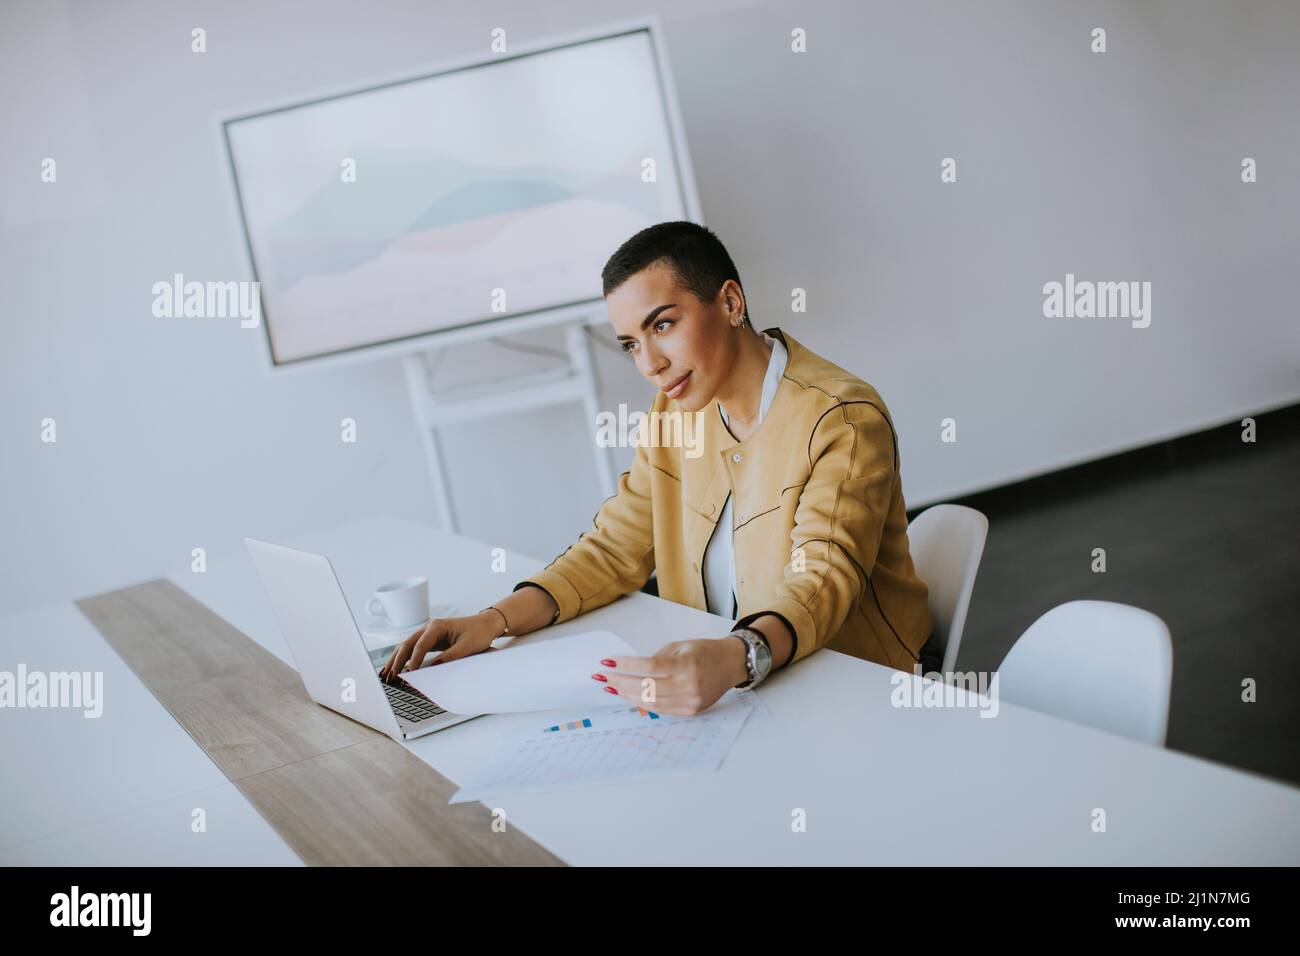 Junge Frau mit kurzen Haaren, die am Laptop arbeitet, während sie im Büro sitzt Stockfoto